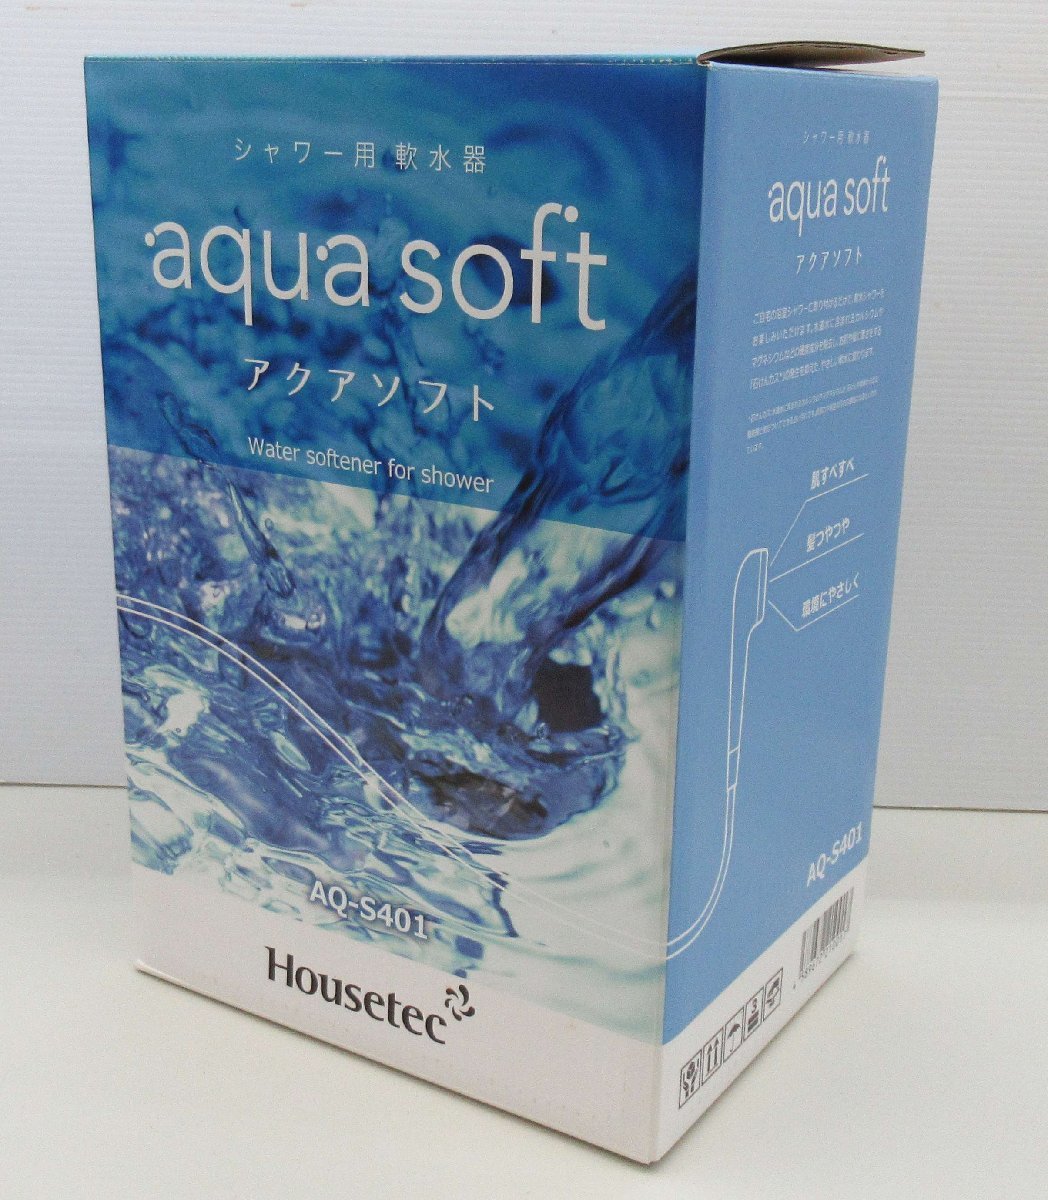 ☆【新品・未使用】Housetec ハウステック シャワー用軟水器 aqua soft